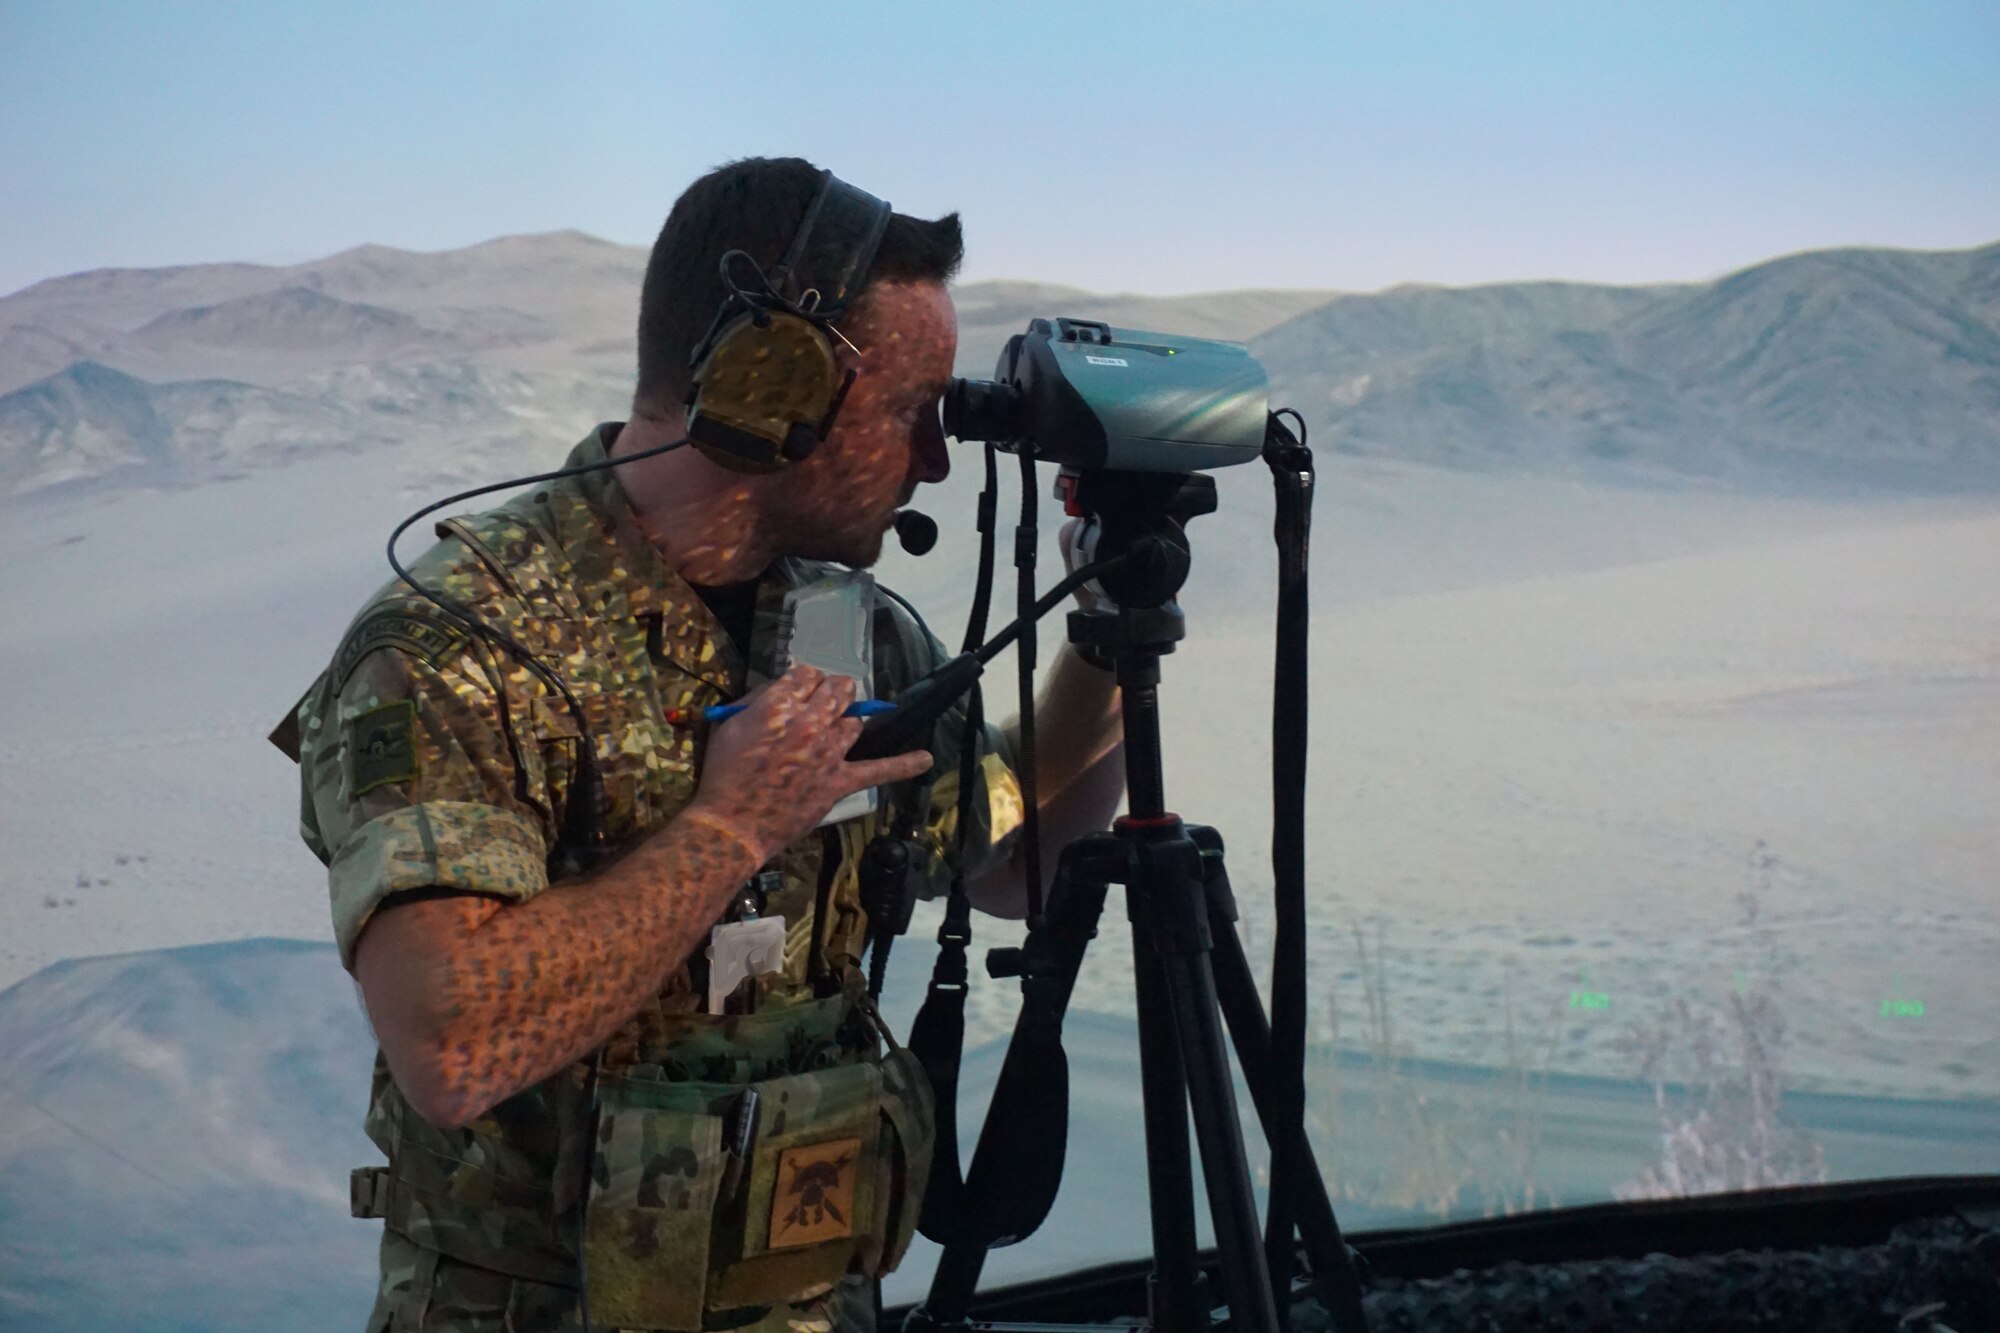 military member using binoculars in virtual environment